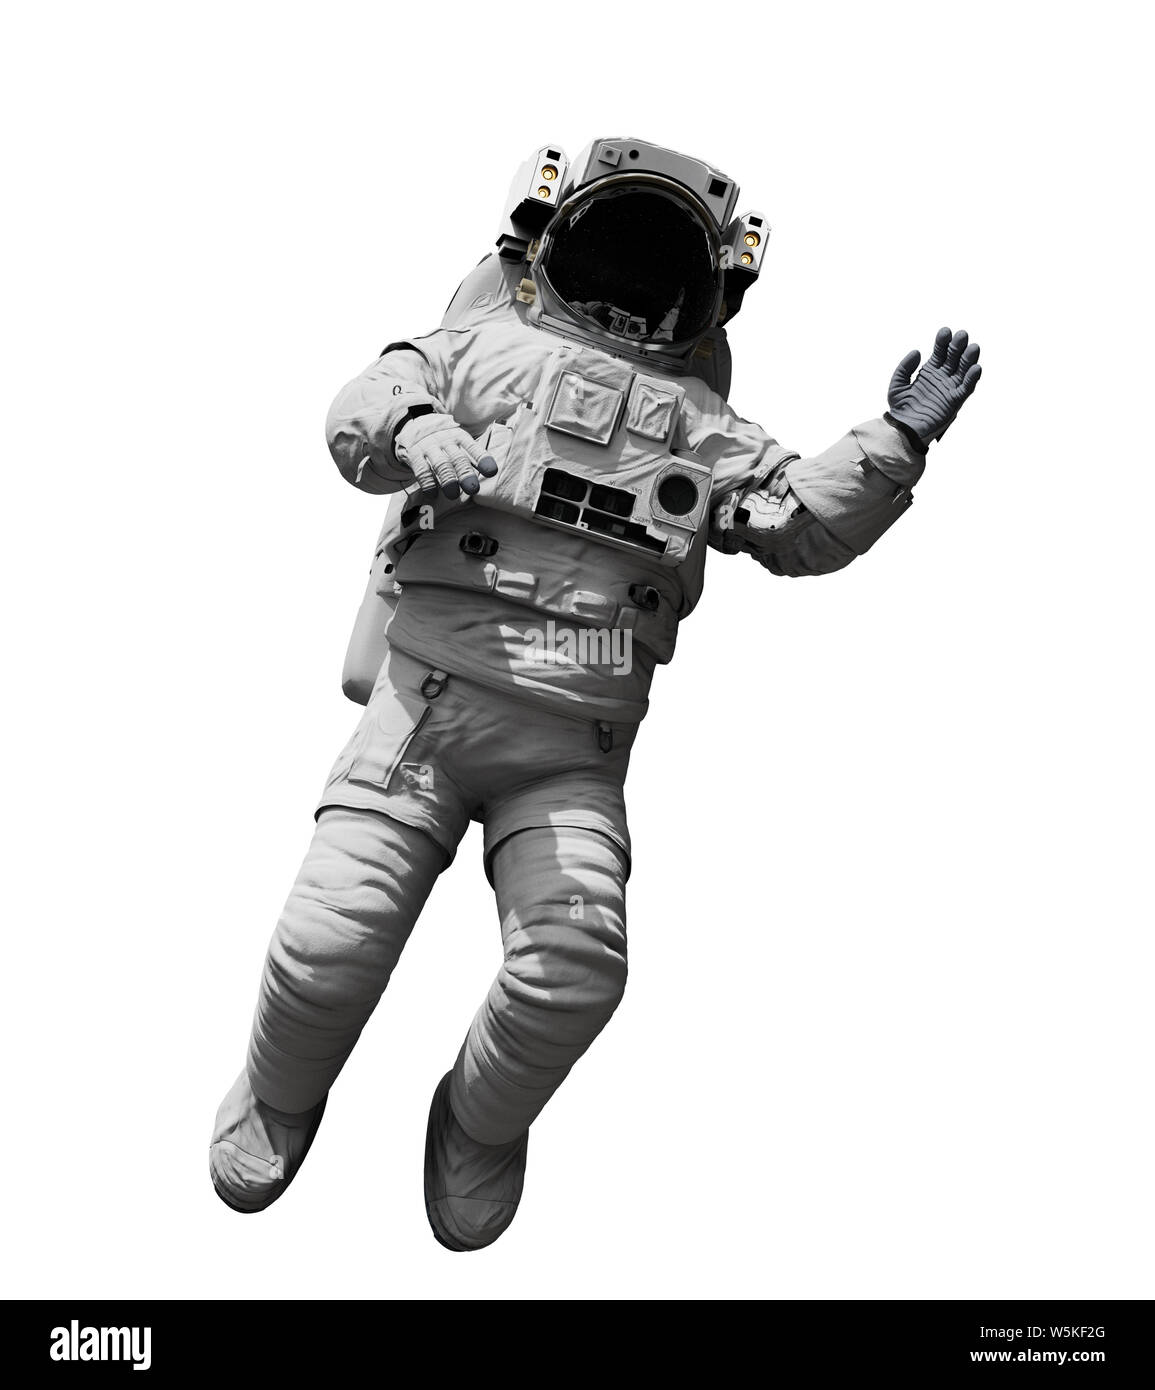 Flottant d'astronautes dans l'espace, isolé sur fond blanc Banque D'Images